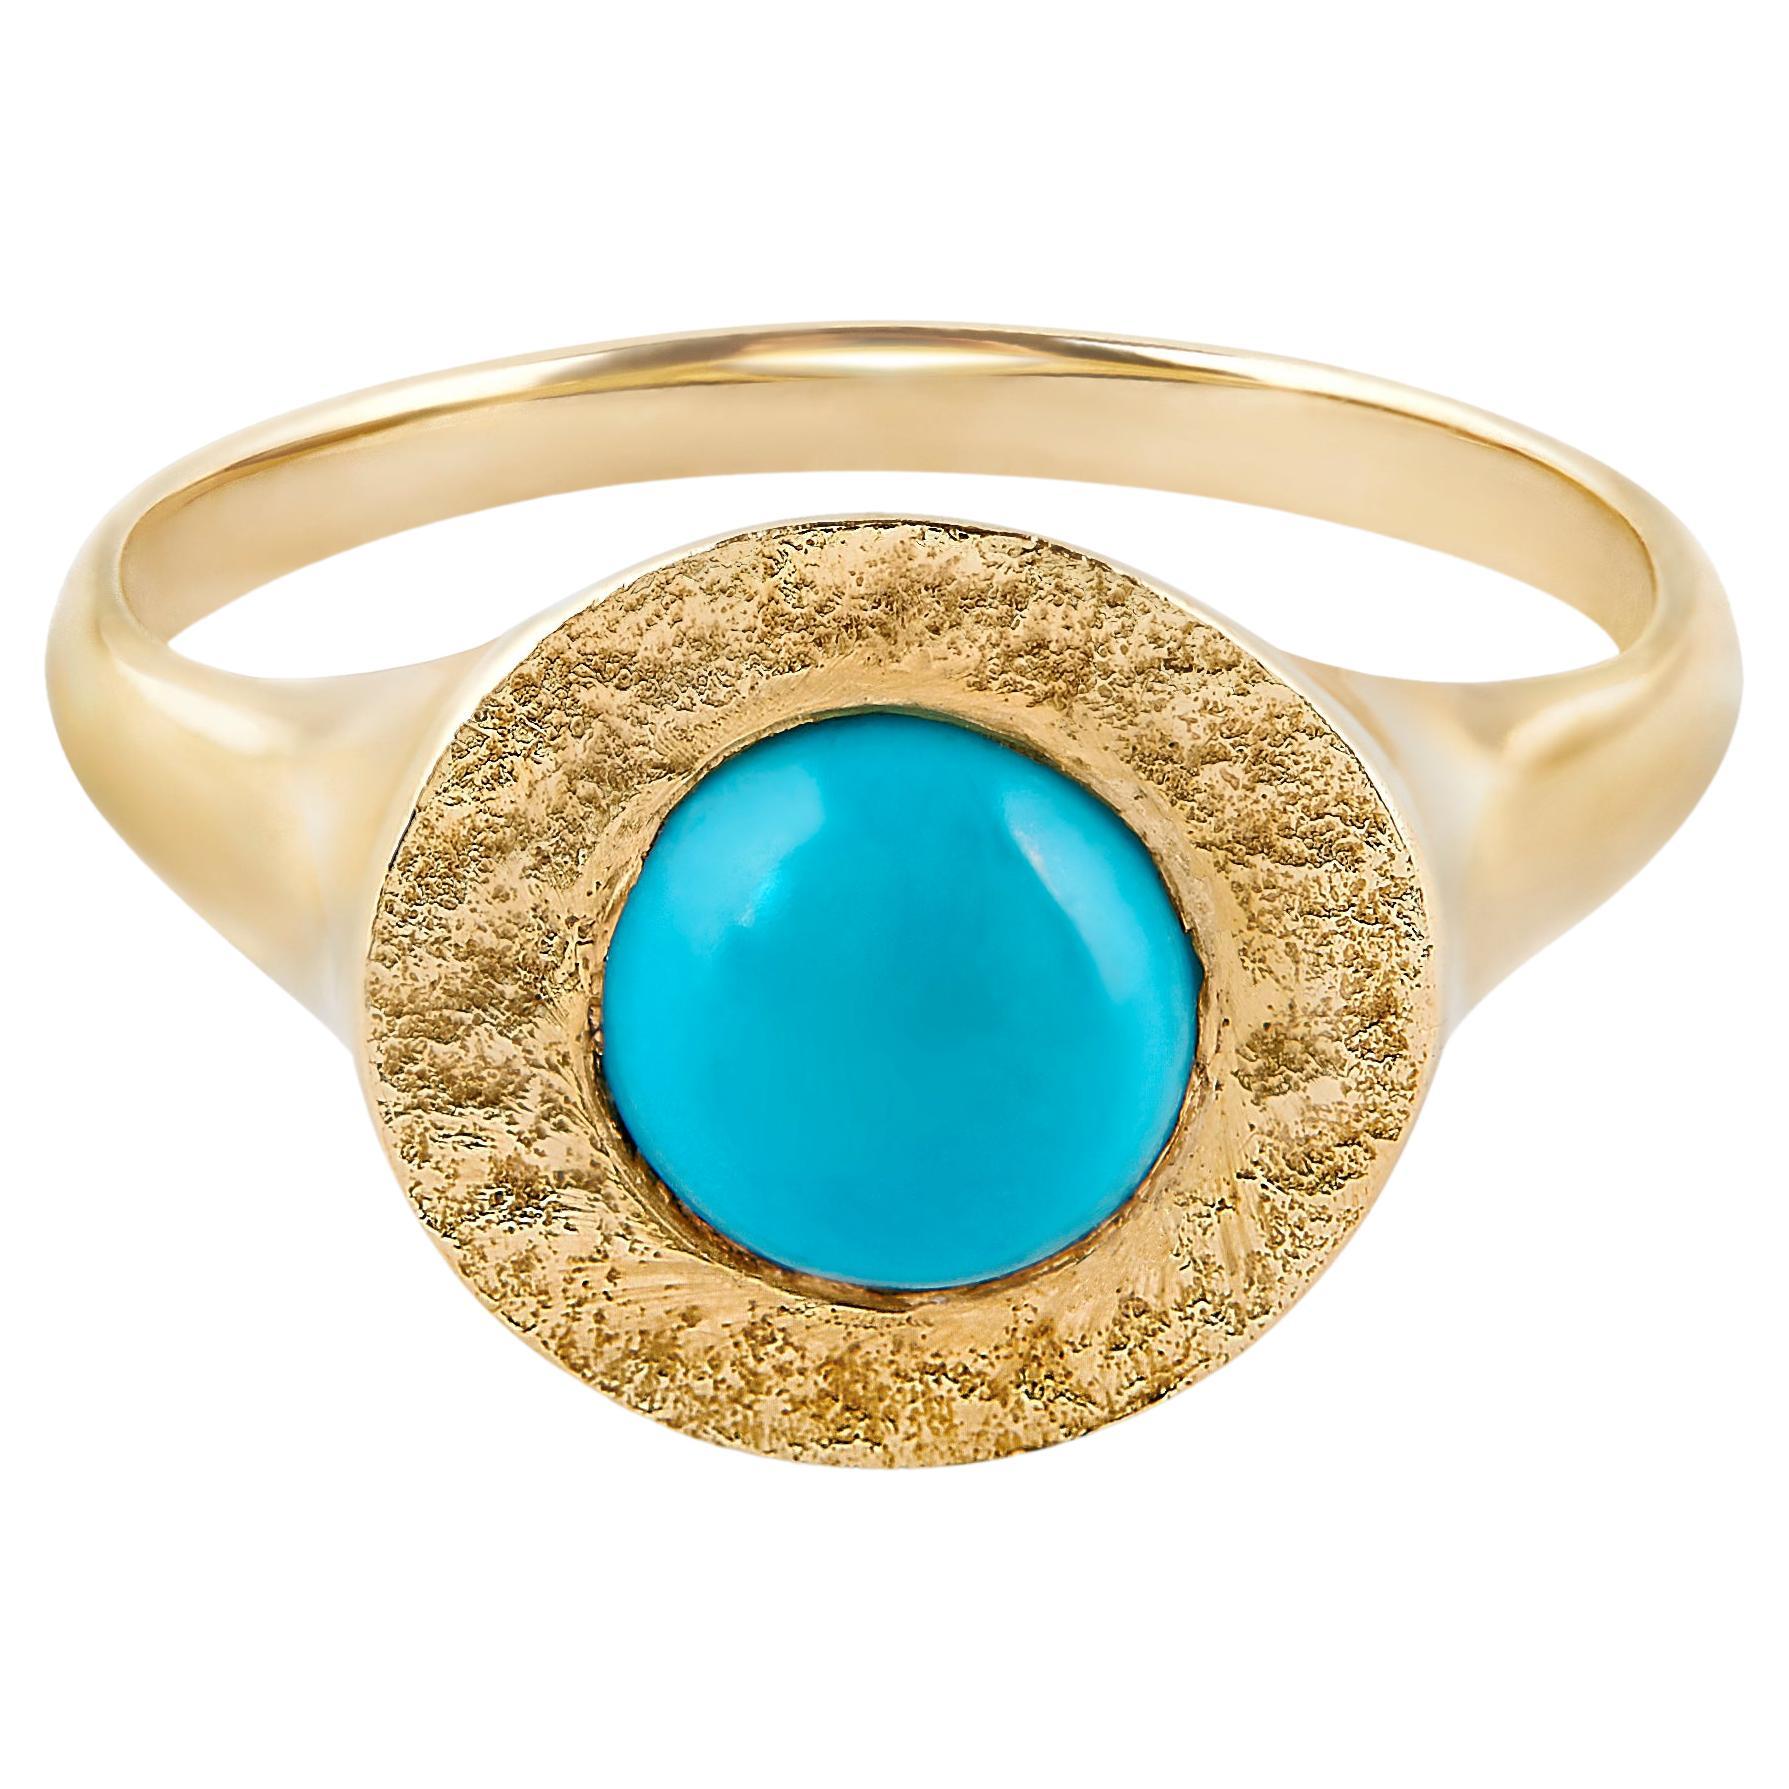 Turquoise Signet Ring in 14 Karat Gold by Allison Bryan